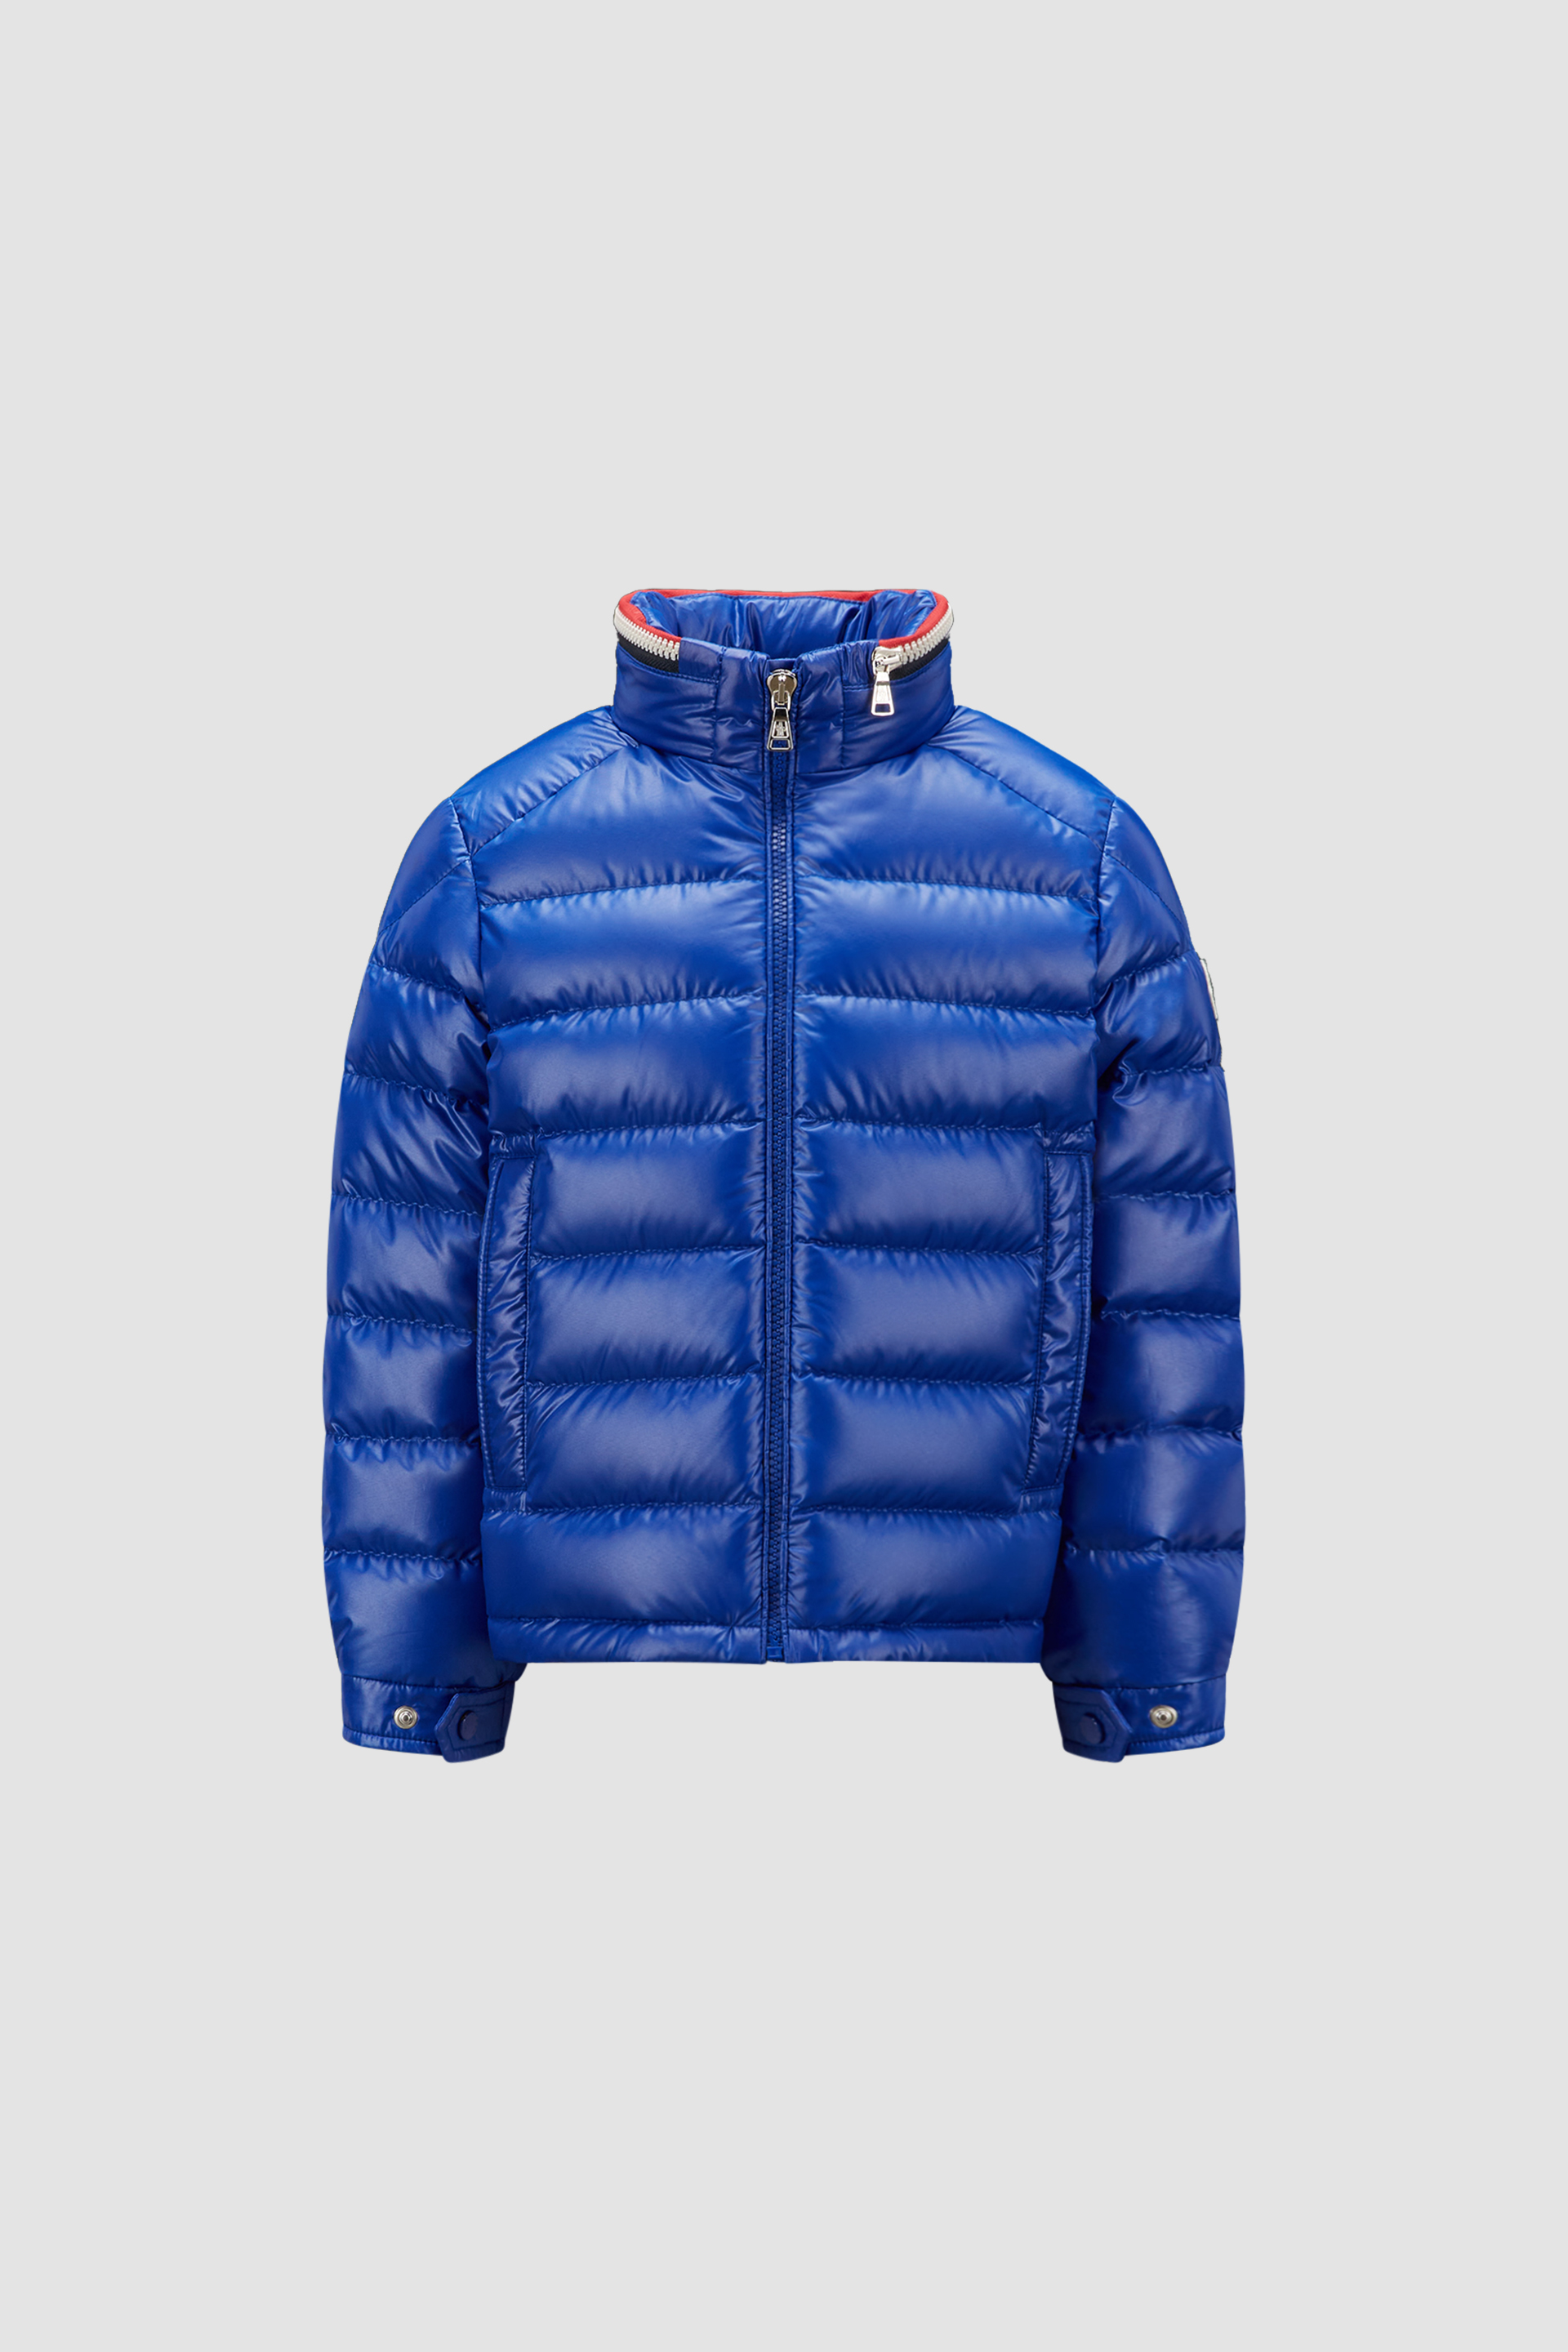 秋冬新品Moncler Karakorum男童短款衣袖可拆卸羽绒服夹克外套蓝色 